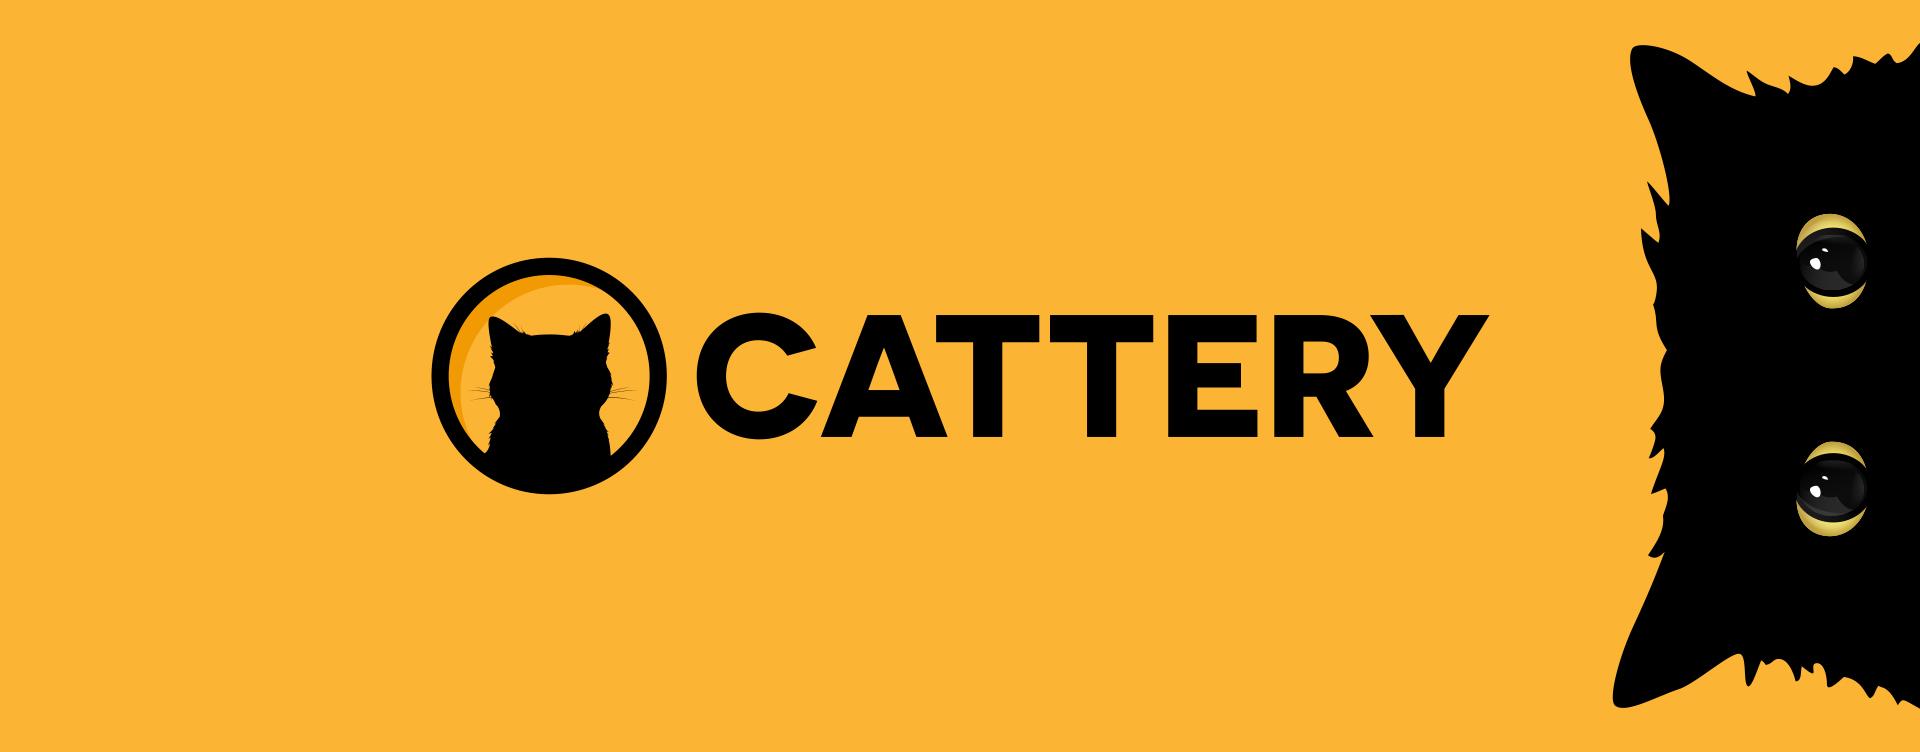 cattery header